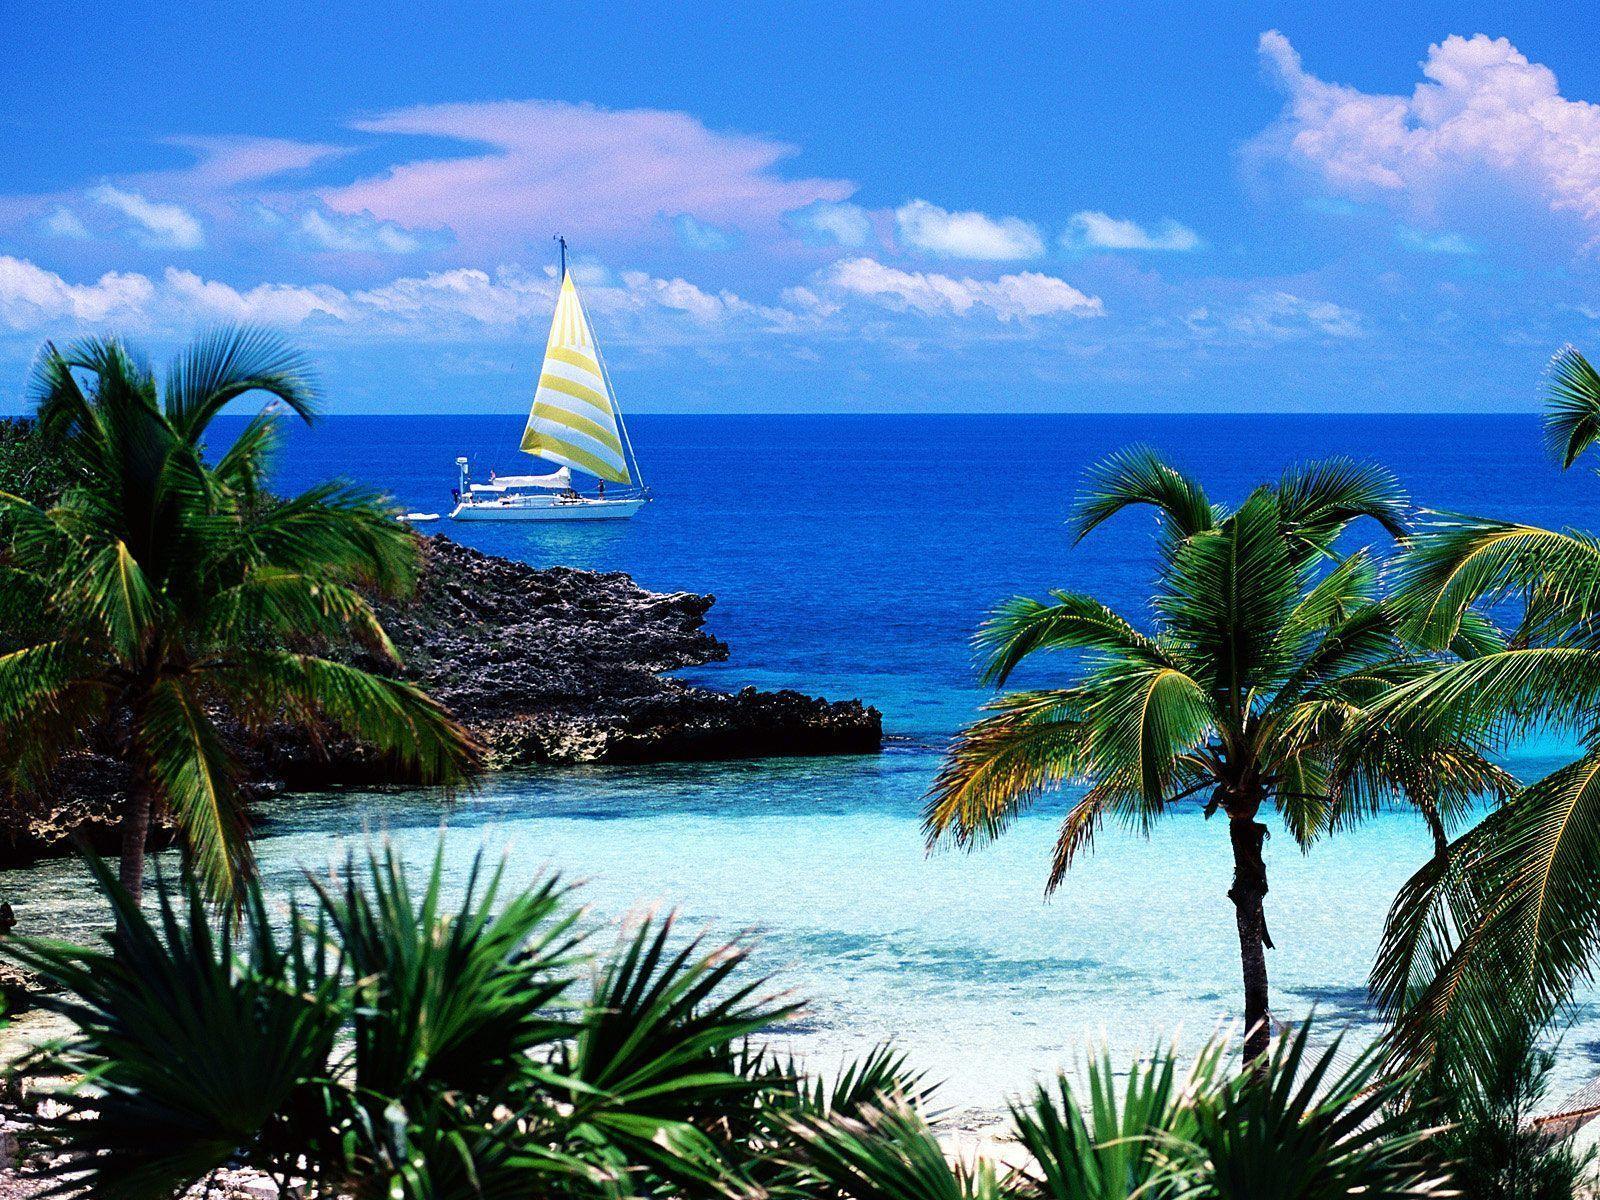 Beaches & Islands HD Wallpaper. Beach Desktop Background, Stock